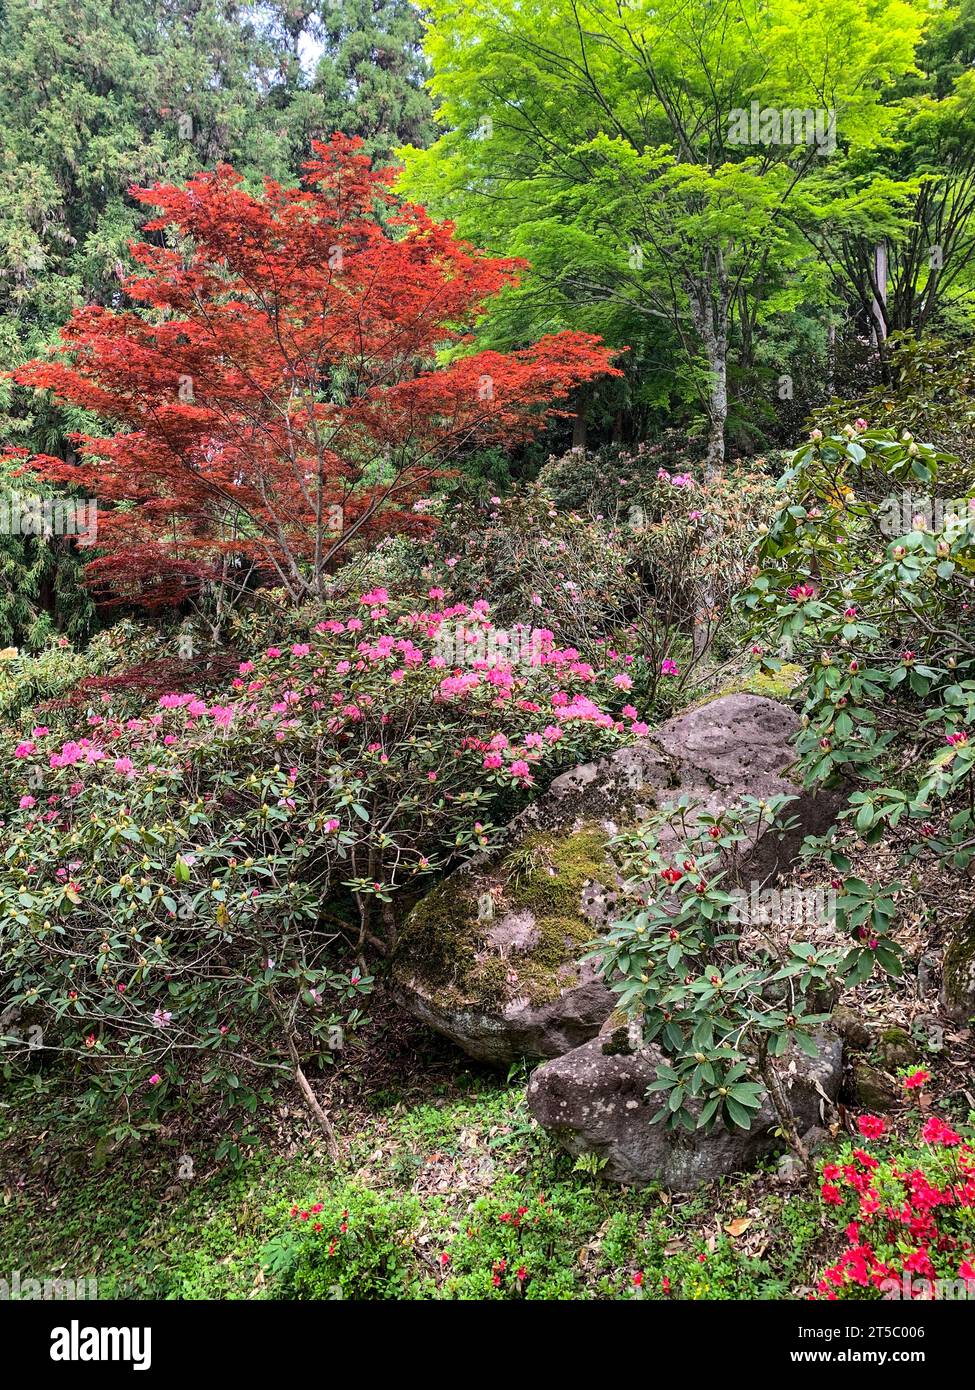 Giappone, Kyushu. Acero giapponese e Rhododendron sulla strada per il tempio buddista Choan-ji. Penisola di Kunisaki, Prefettura di Oita. Foto Stock